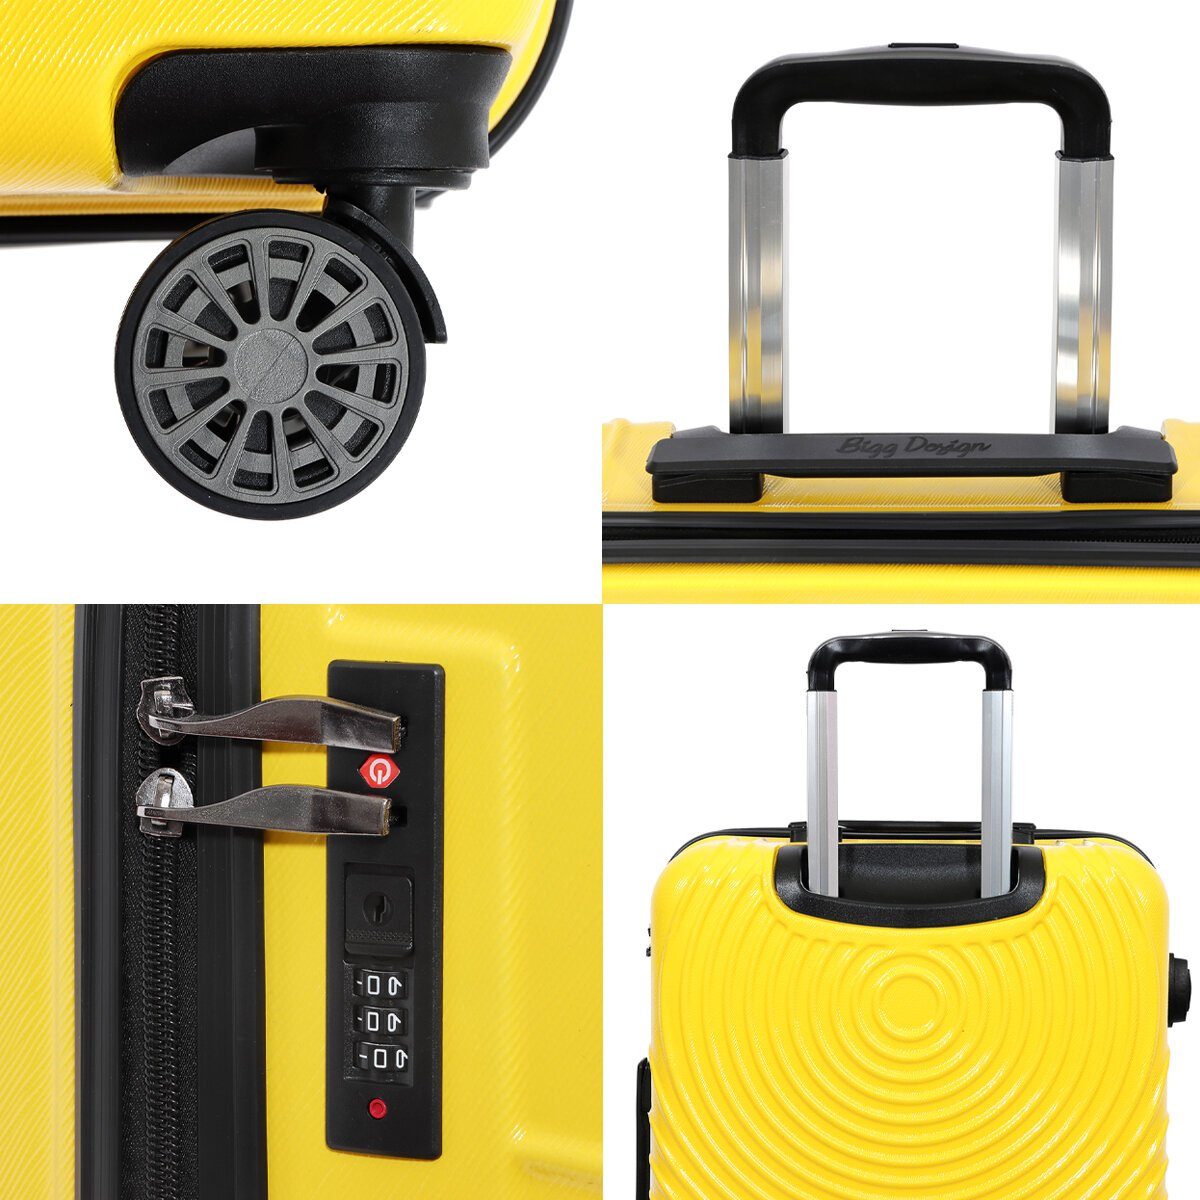 3 Set BIGGDESIGN Koffer Cats teilig Hartschale Biggdesign Gelb Kofferset Koffer